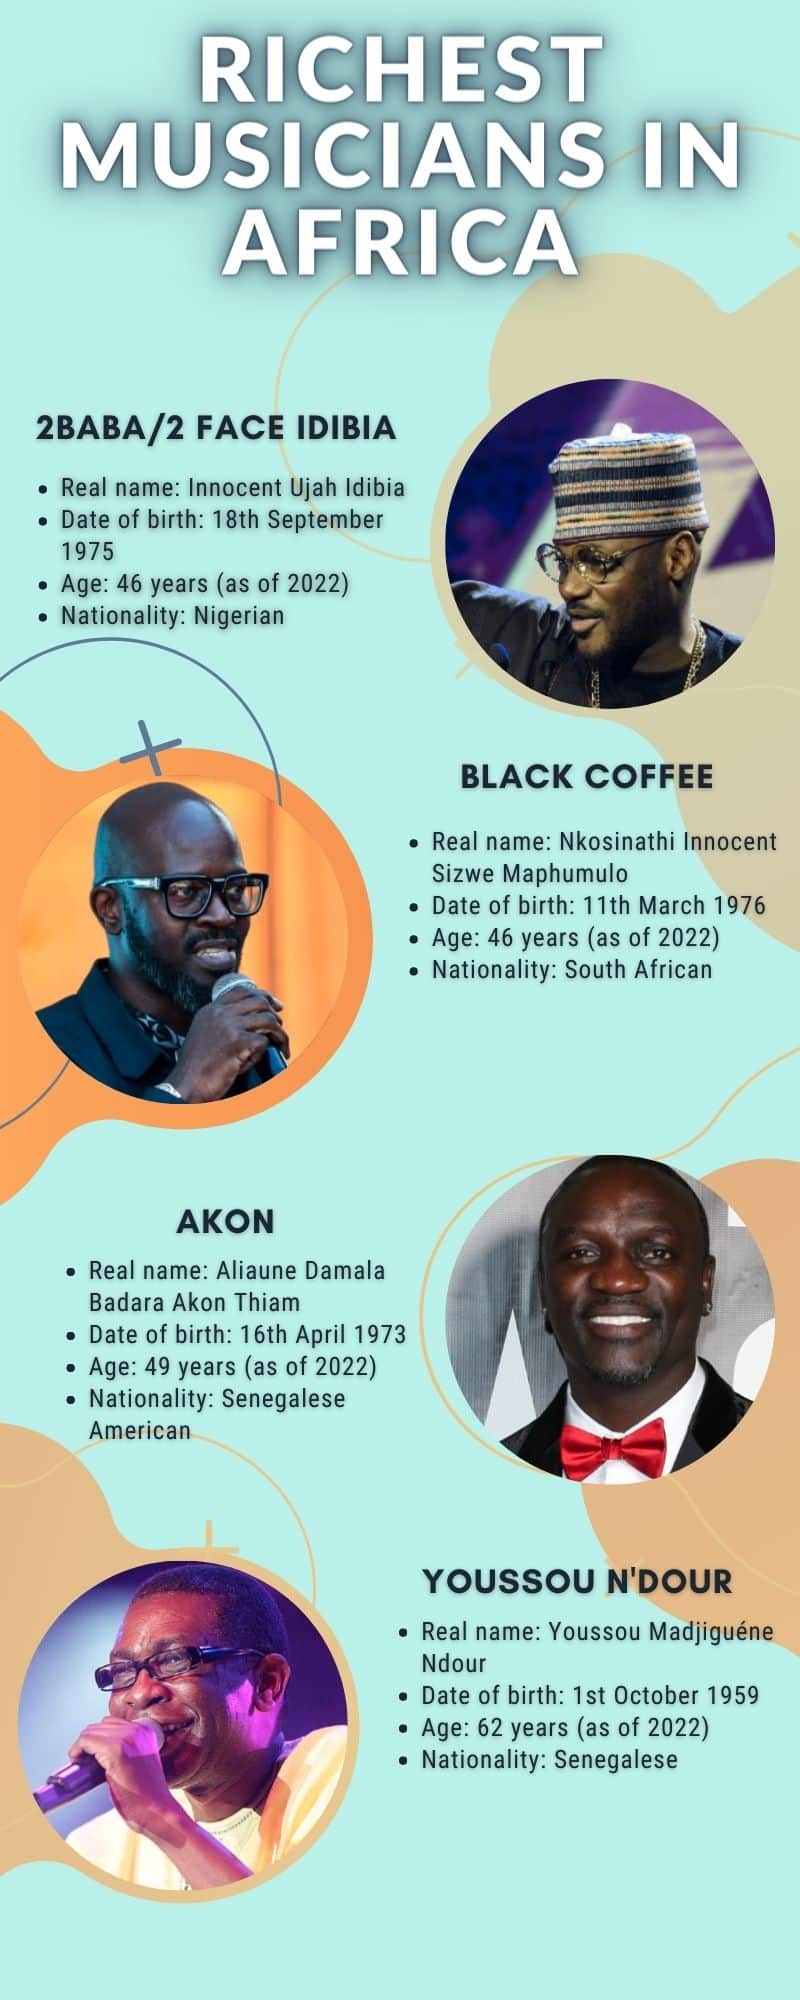 Richest musicians in Africa